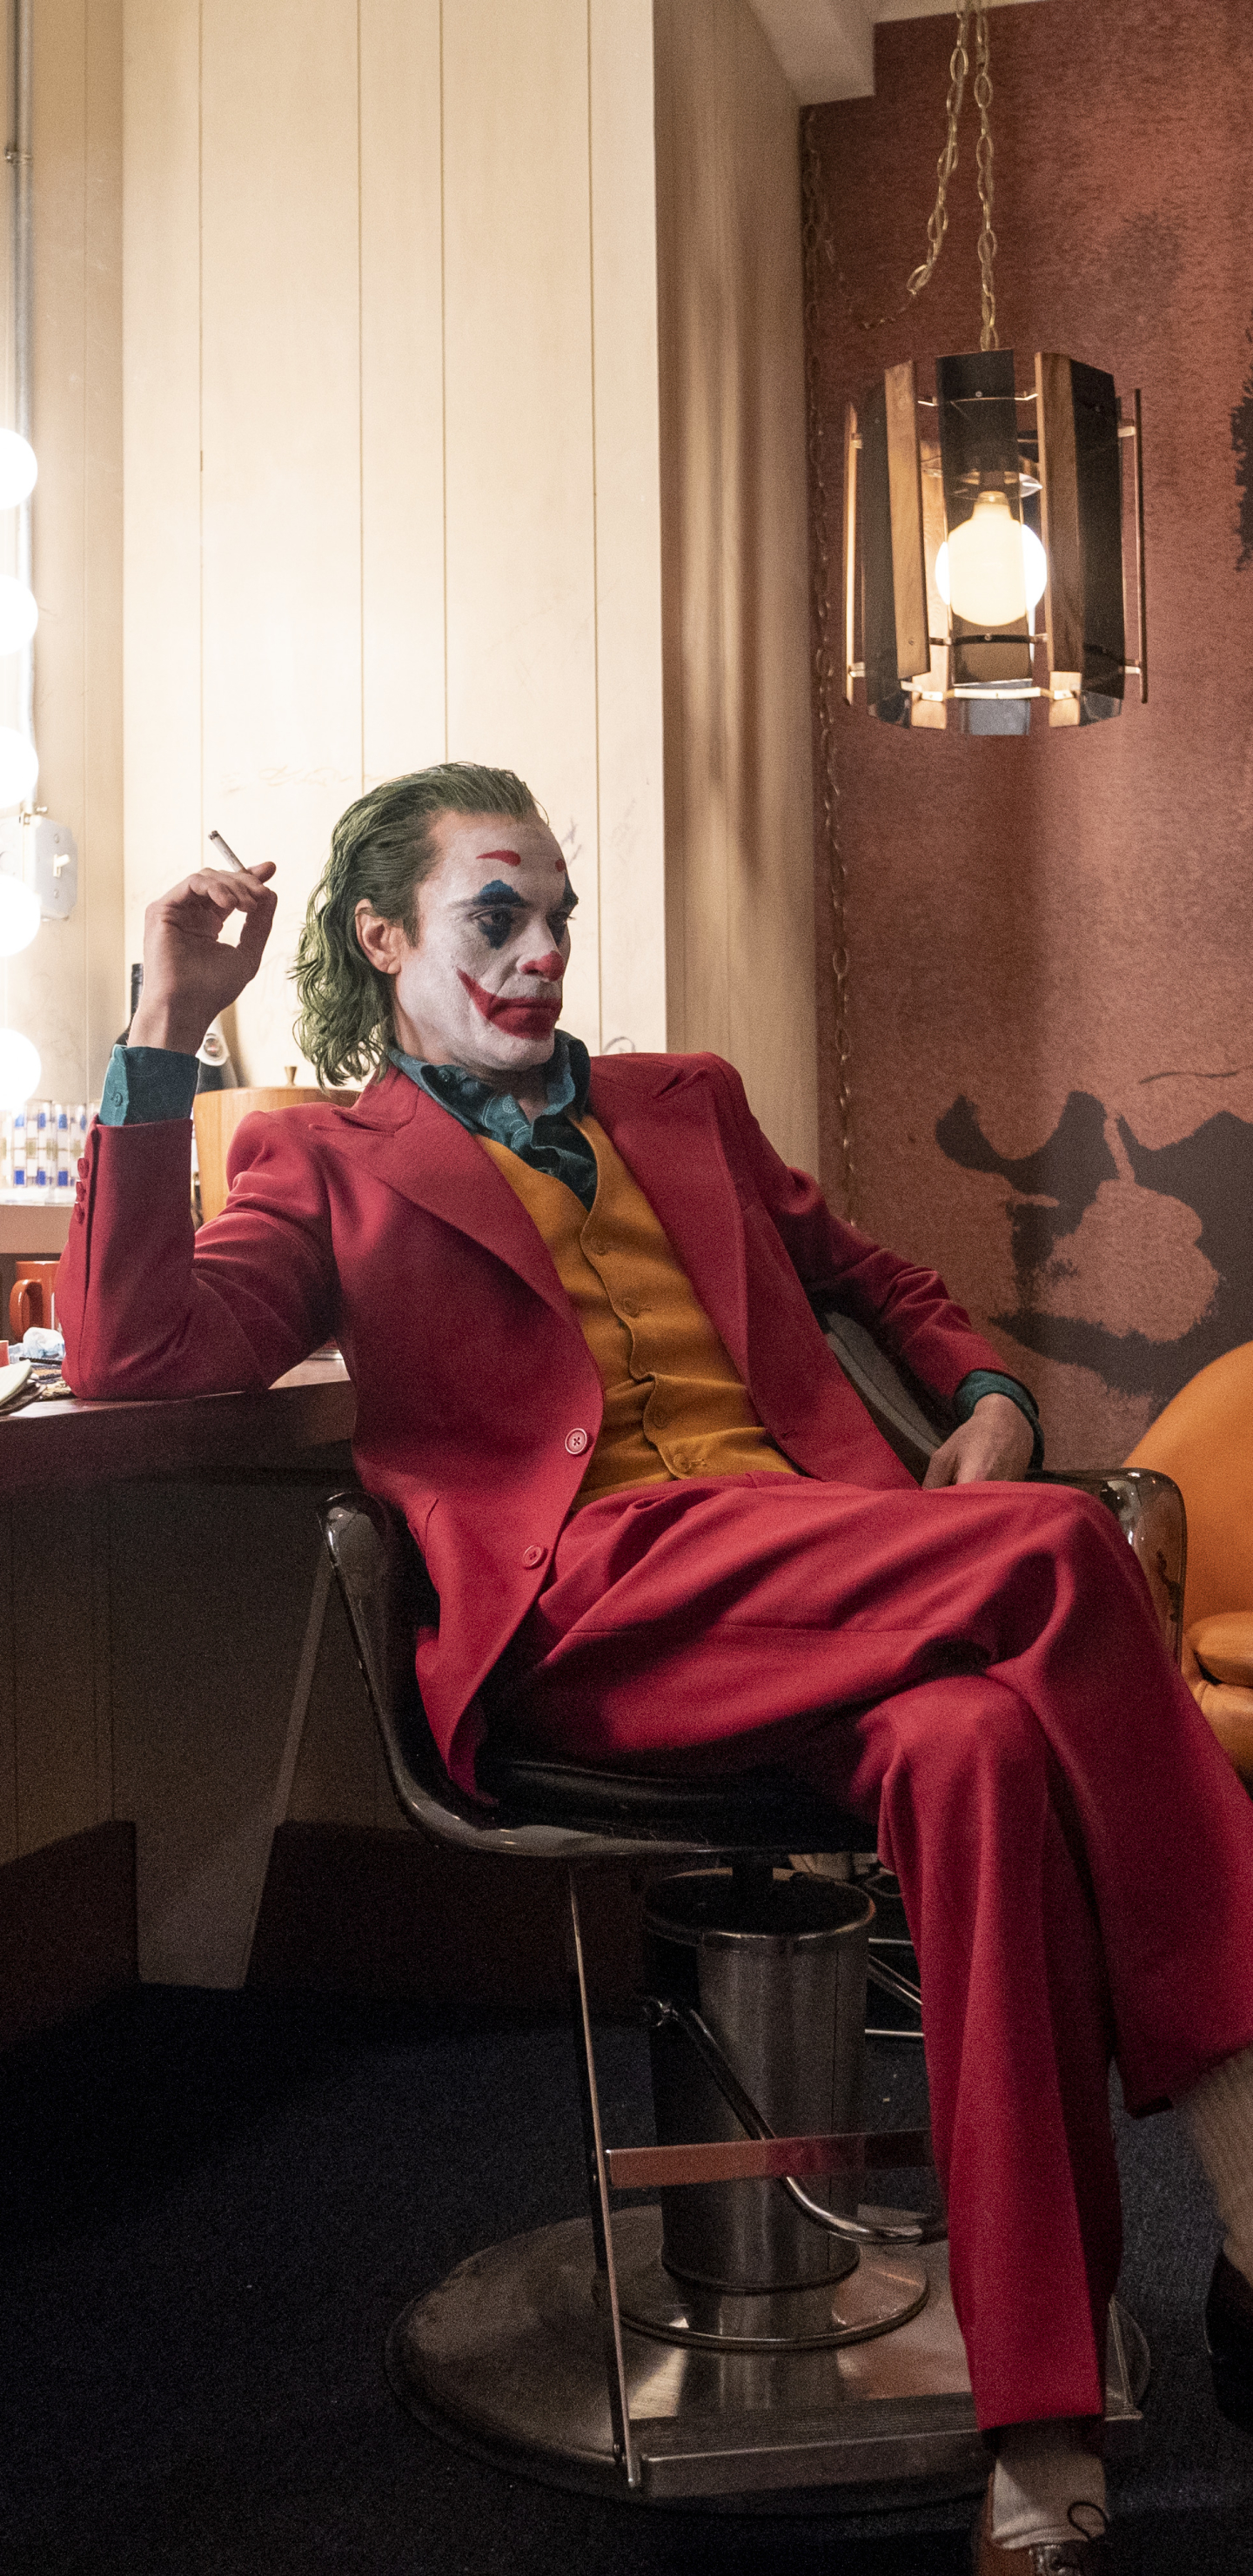 Joker Hd Images 2019 - HD Wallpaper 